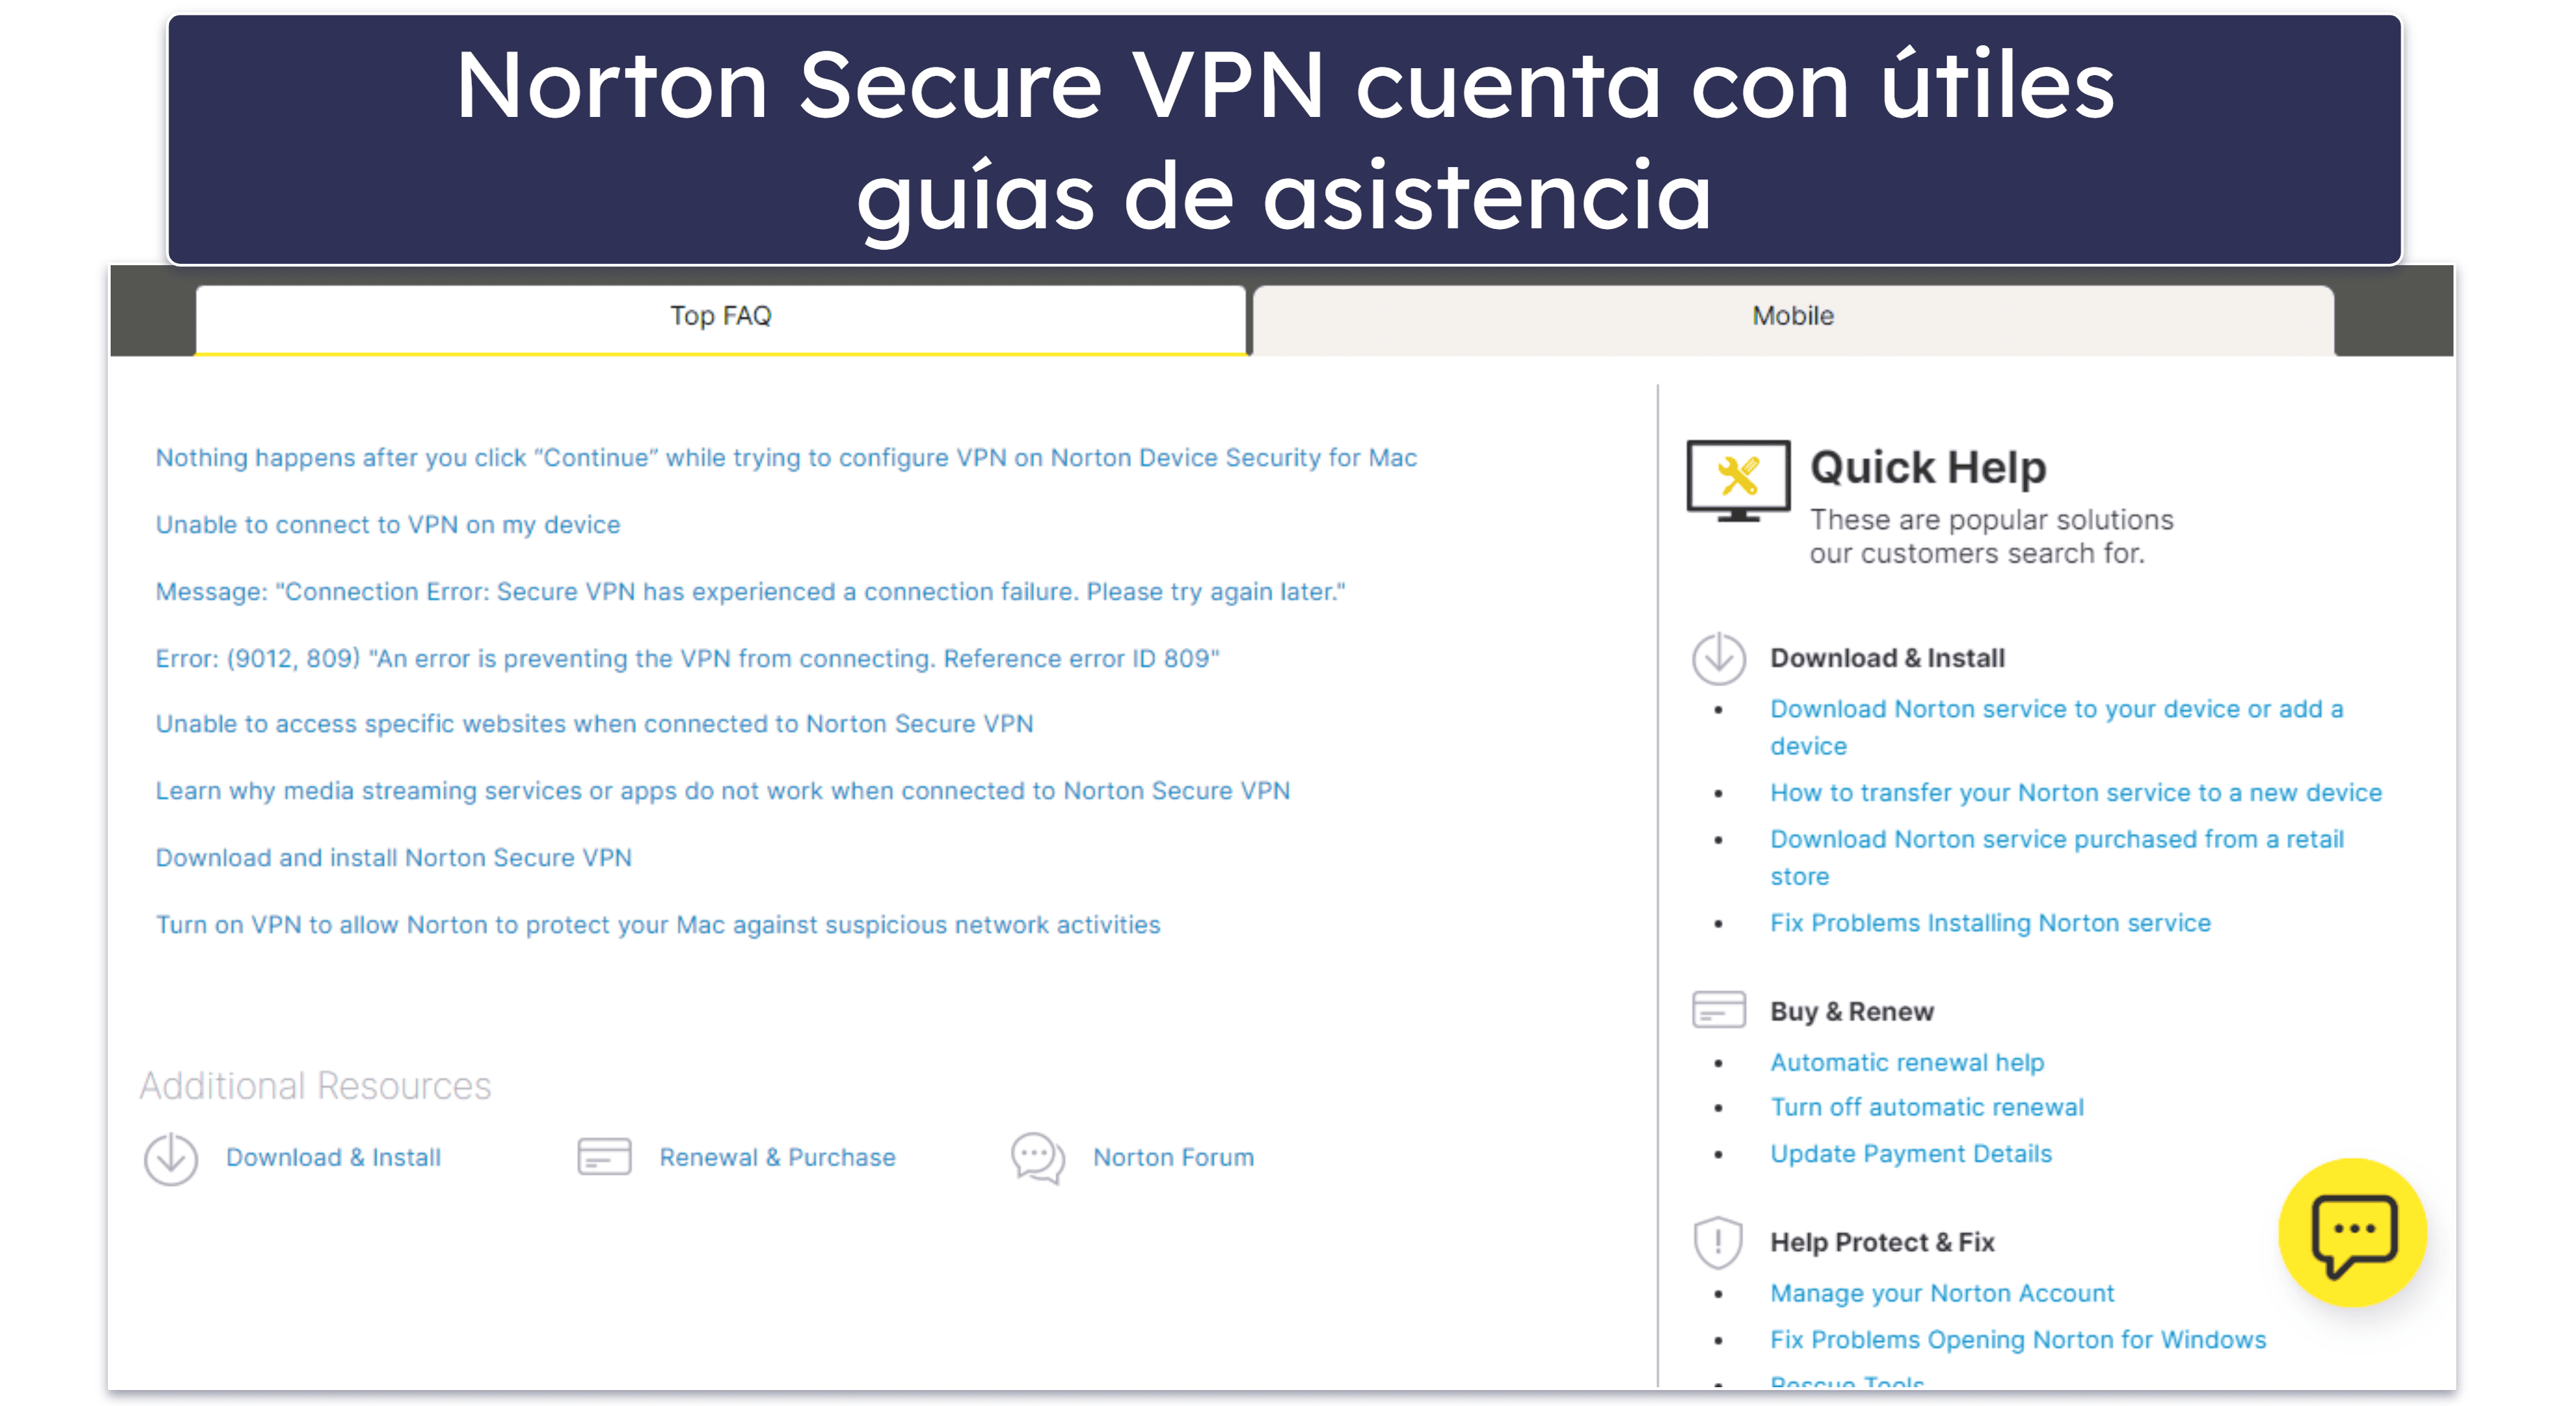 Asistencia al cliente de Norton Secure VPN